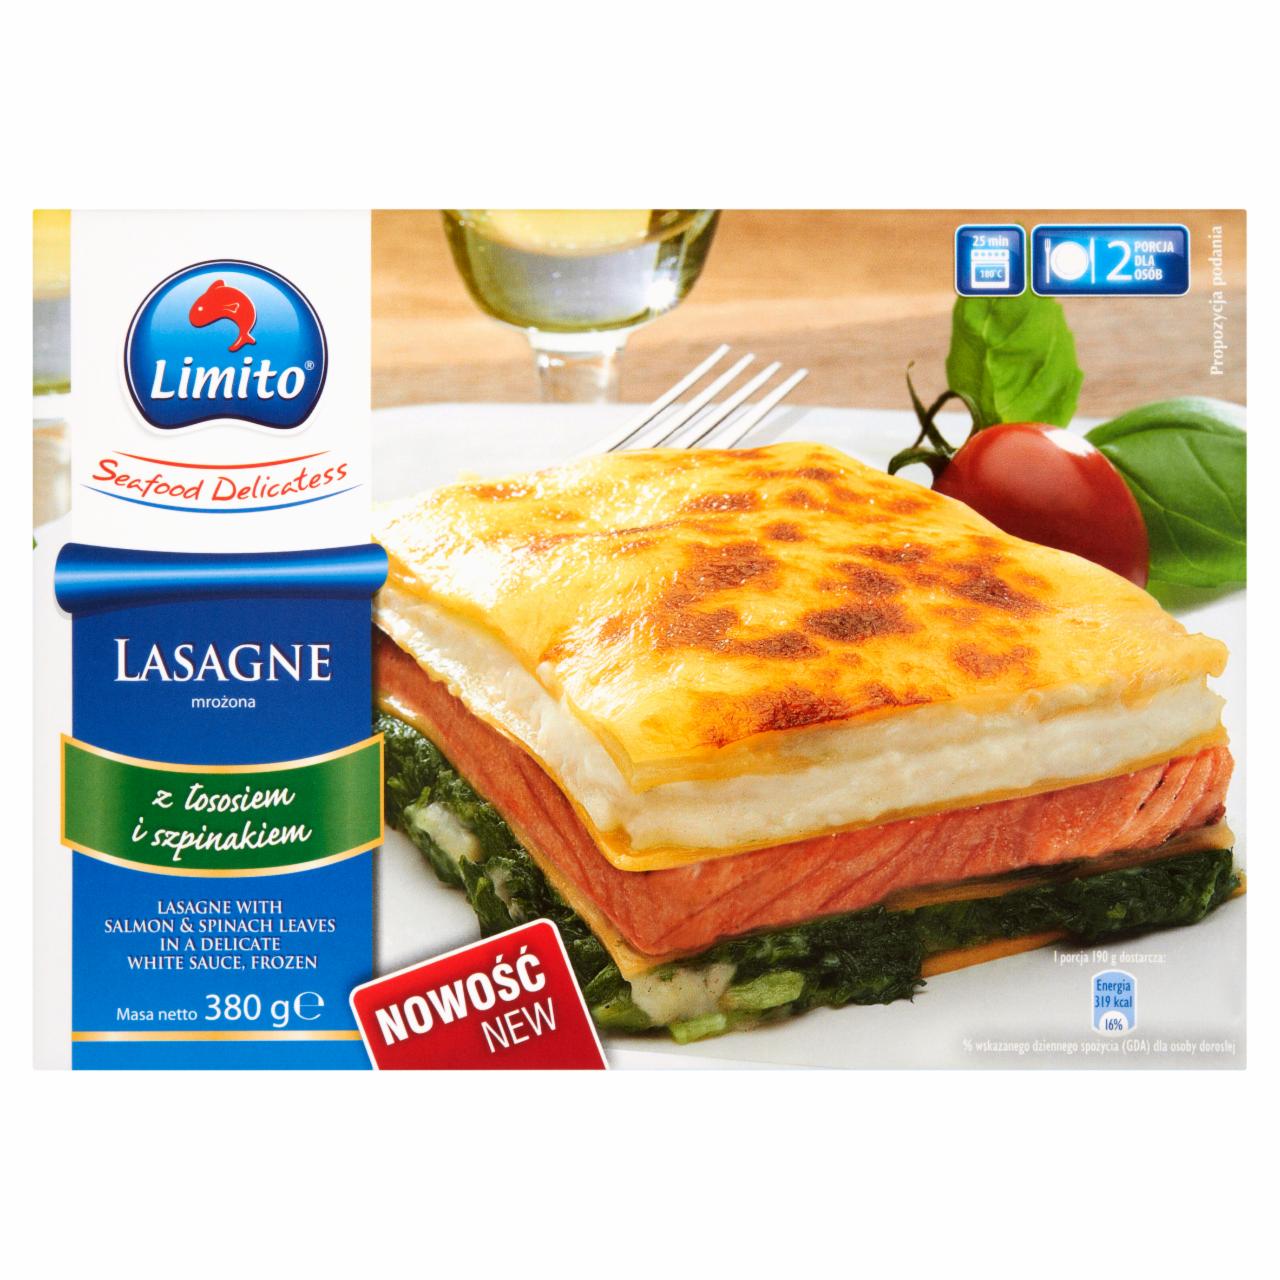 Zdjęcia - Limito Lasagne z łososiem i szpinakiem 380 g